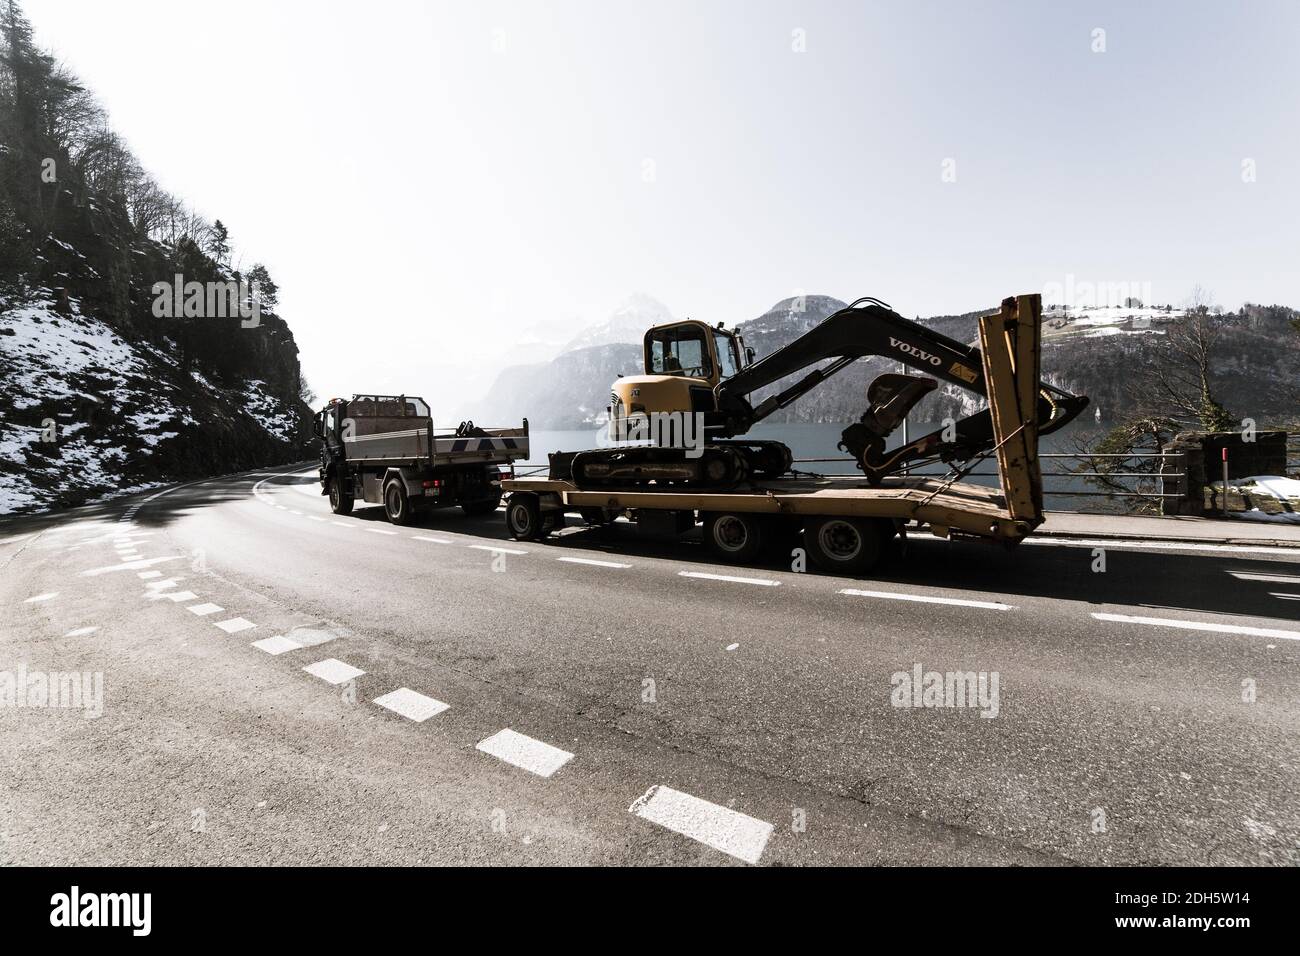 NO WEB/NO APPS - Vista generale della strada che costeggia il lago dei quattro Cantoni in Svizzera nel marzo 2016. La strada attraversa le Alpi svizzere e il traffico intenso - soprattutto quello dei camion - è molto intenso. Rappresenta un fattore di inquinamento per la popolazione locale e minaccia l'ecosistema alpino. Il tunnel di base del Gottardo (GBT) è un tunnel ferroviario che attraversa le Alpi in Svizzera. Il primo giugno 2016 è stato aperto e il 11 dicembre 2016 è stato avviato il servizio completo. Con una lunghezza del percorso di 57.09 km e un totale di 151.84 km di gallerie, alberi e passaggi, è il tunnel di traffico più lungo e profondo del mondo Foto Stock